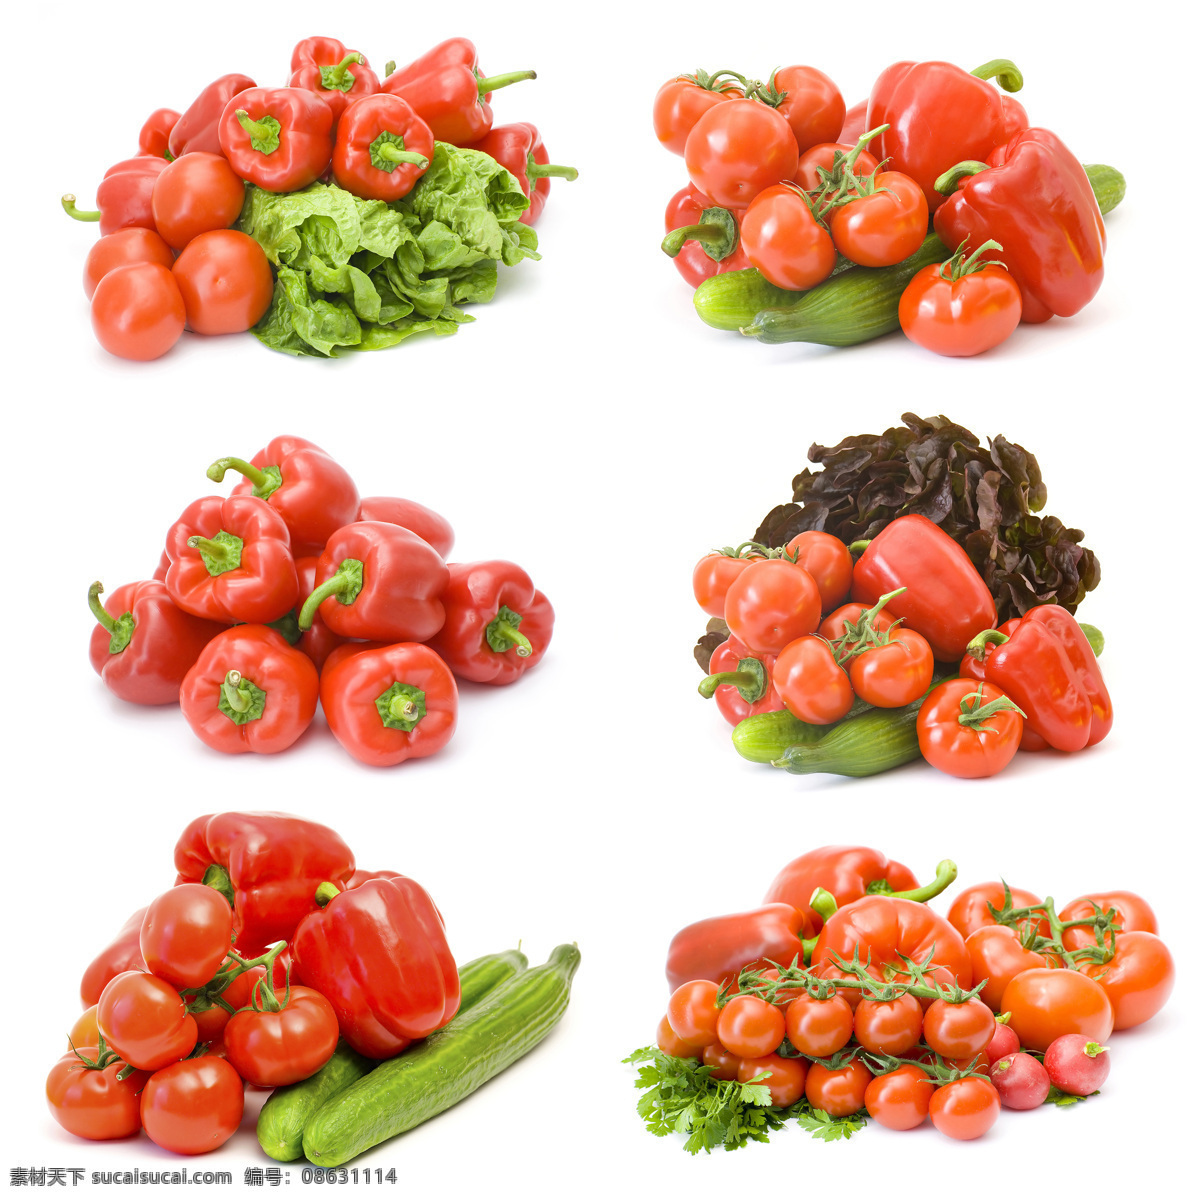 堆放 整齐 蔬菜 堆放整齐 黄瓜 西红柿 柿子椒 蔬菜图片 餐饮美食